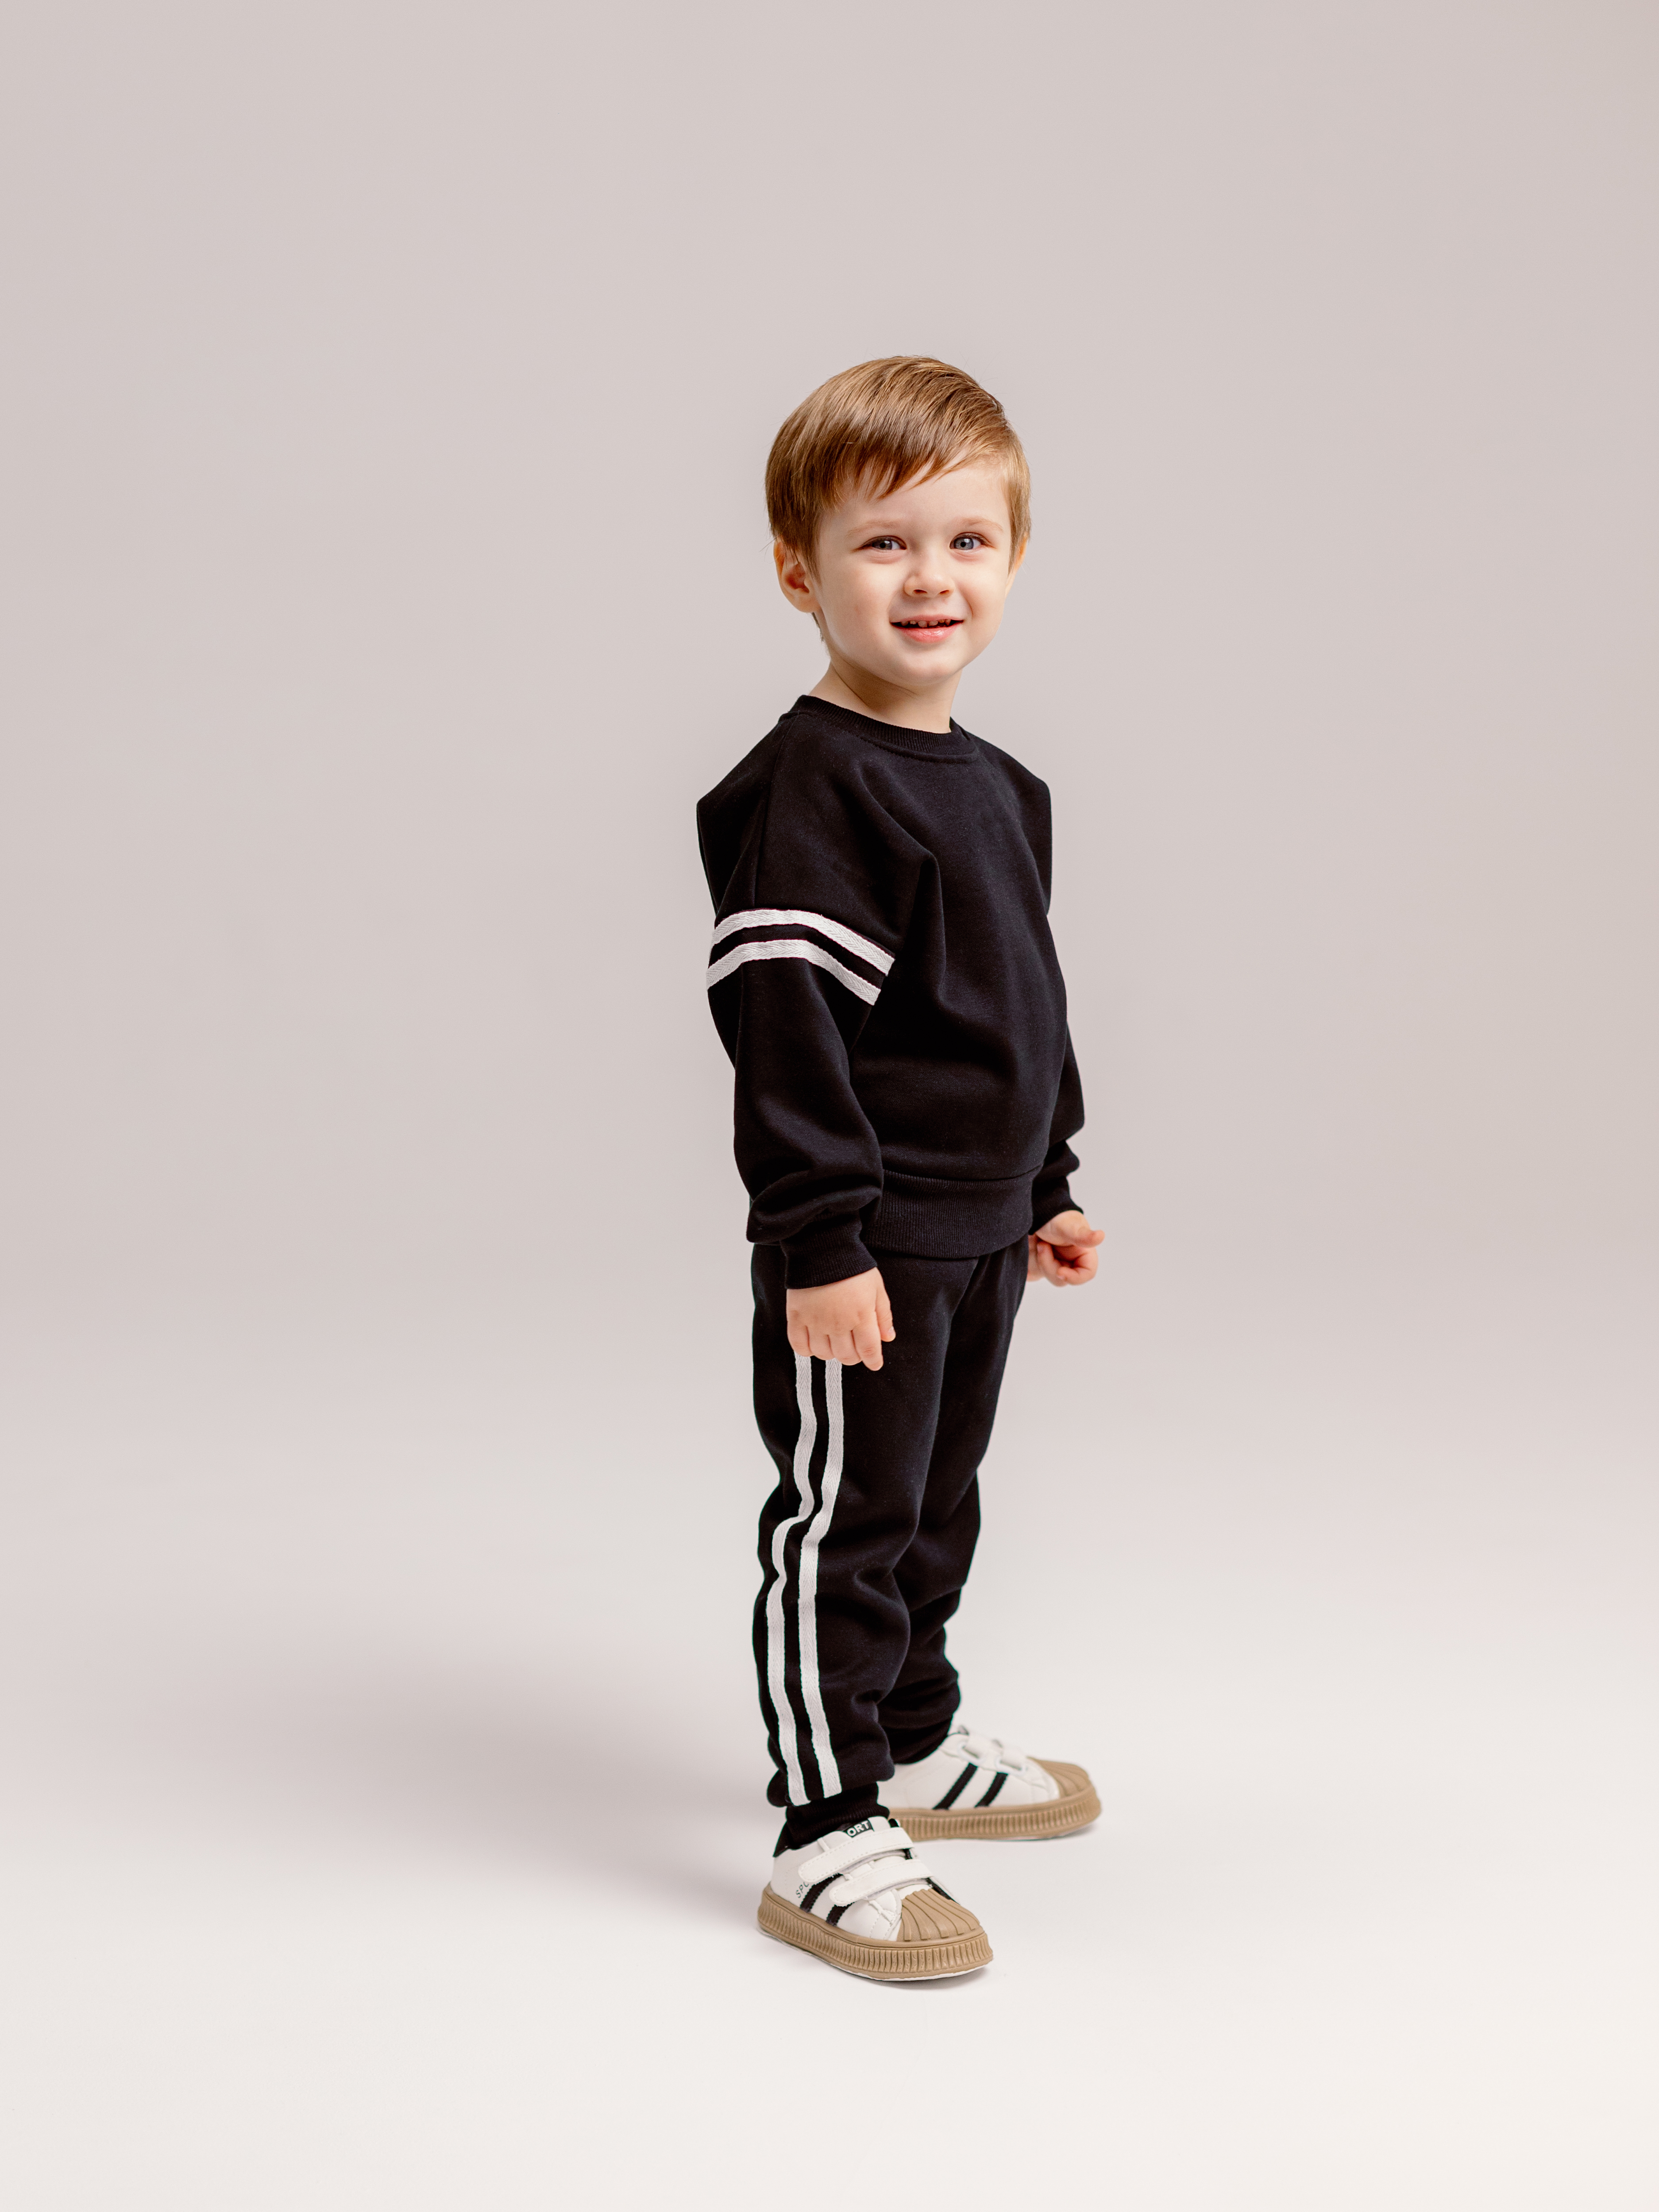 Спортивный костюм BabyDreams KS10/черный костюм для малыша - фото 6